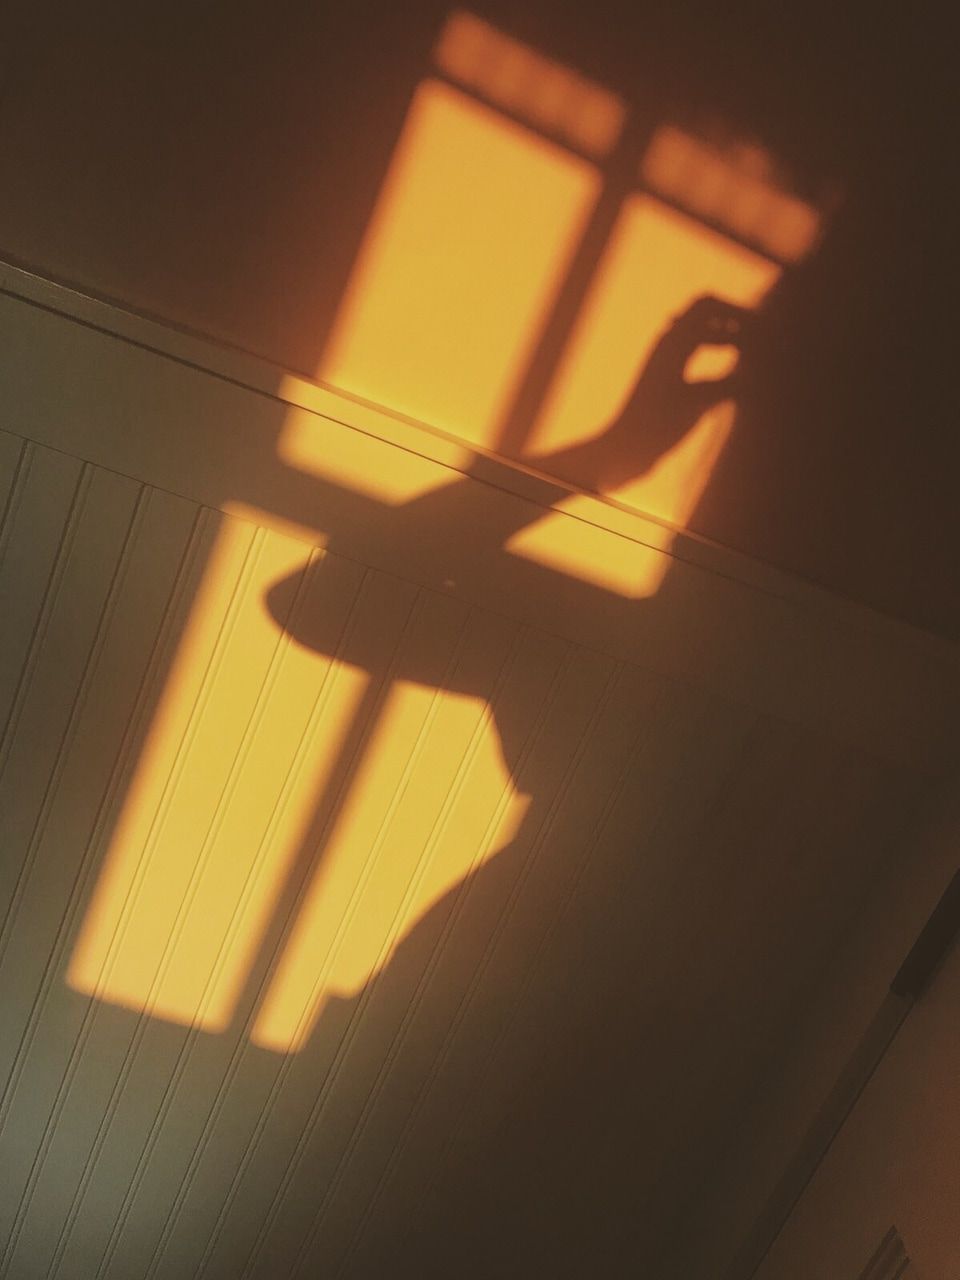 Shadow of a ballerina on a wall - Shadow